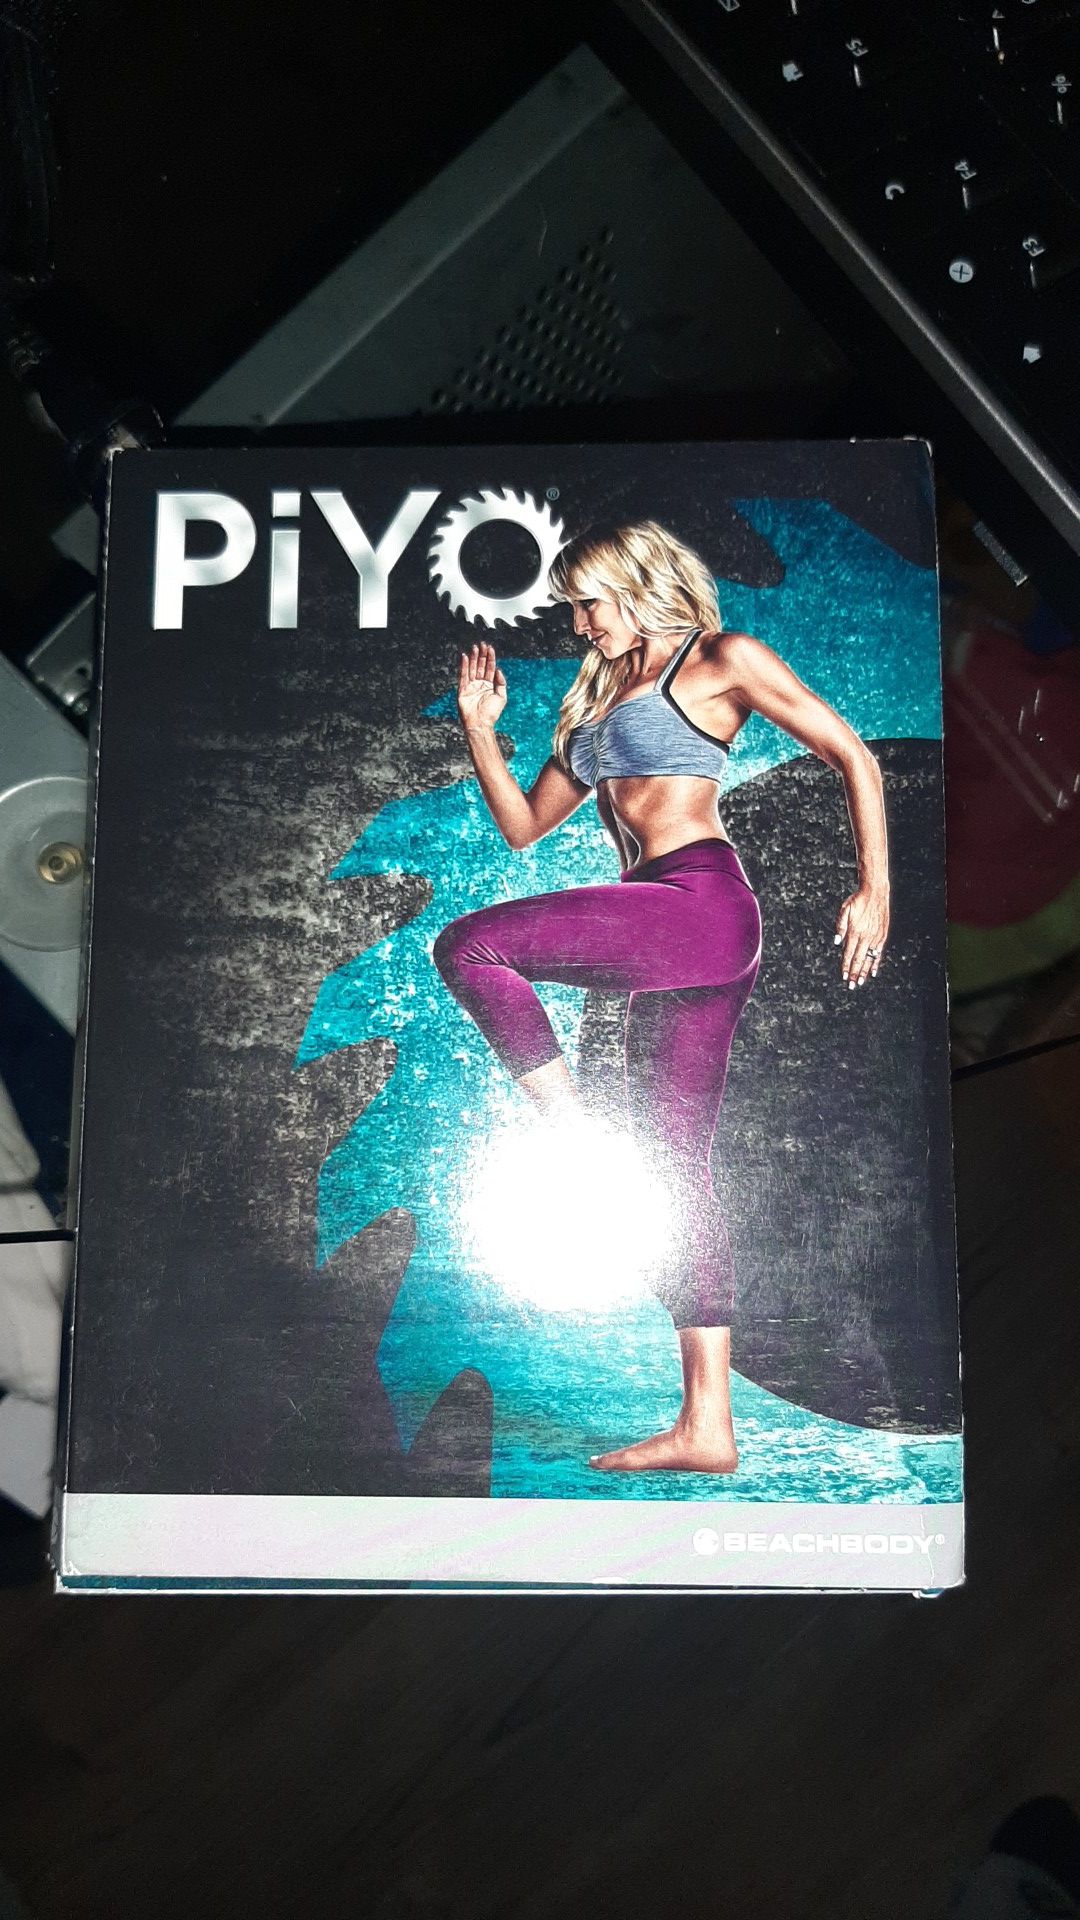 Free piyo workout DVDs